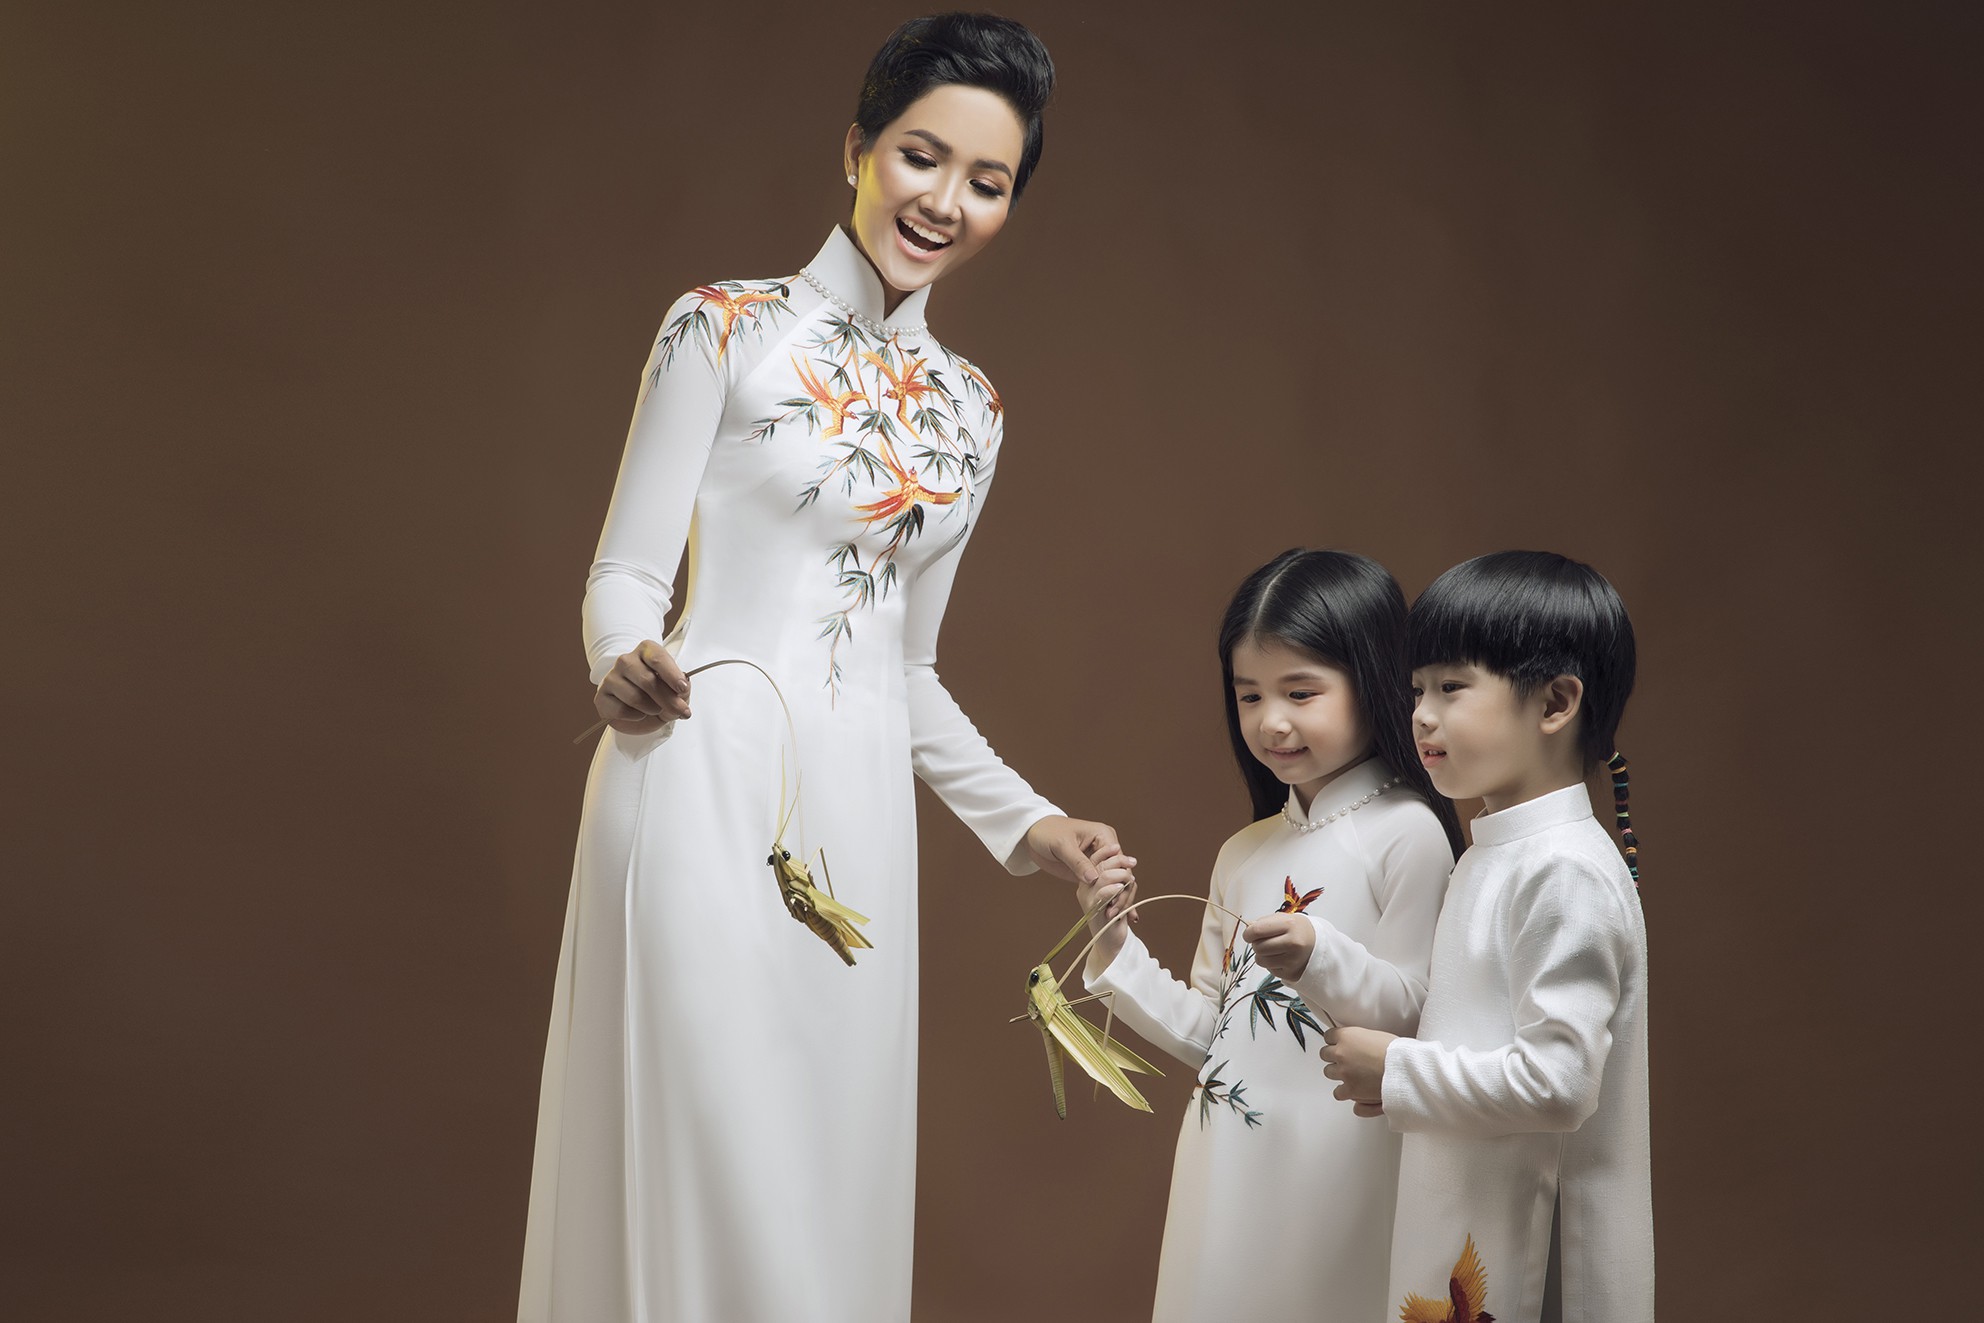 Người dân tộc thiểu số đầu tiên giành vương miện Hoa hậu Hoàn vũ Việt Nam 2017 là H'Hen Niê